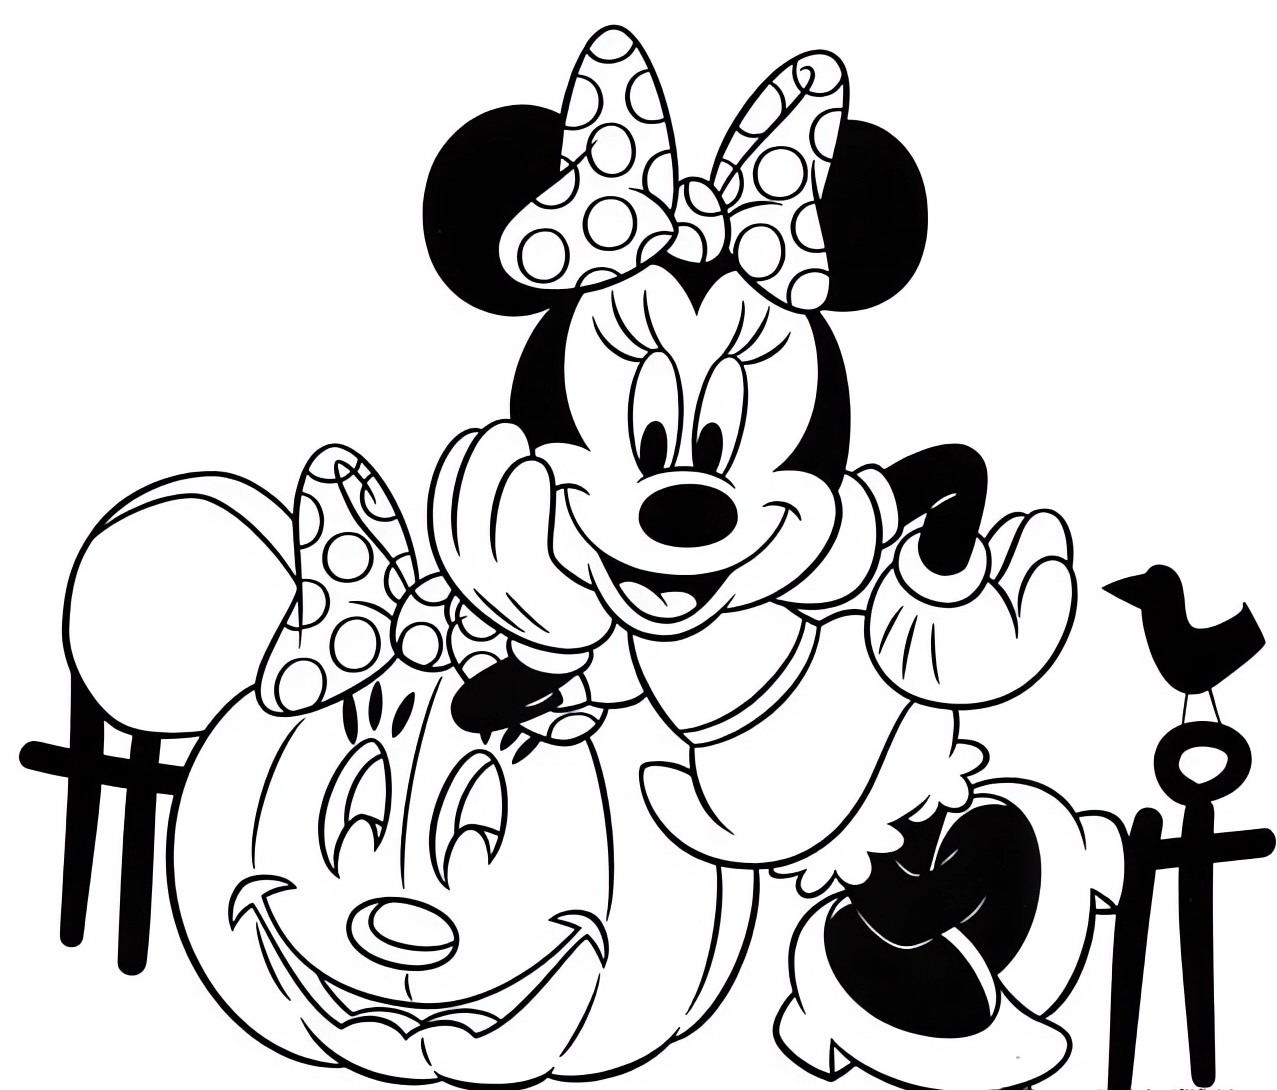 Disegno da colorare di Minnie con la zucca di Halloween  